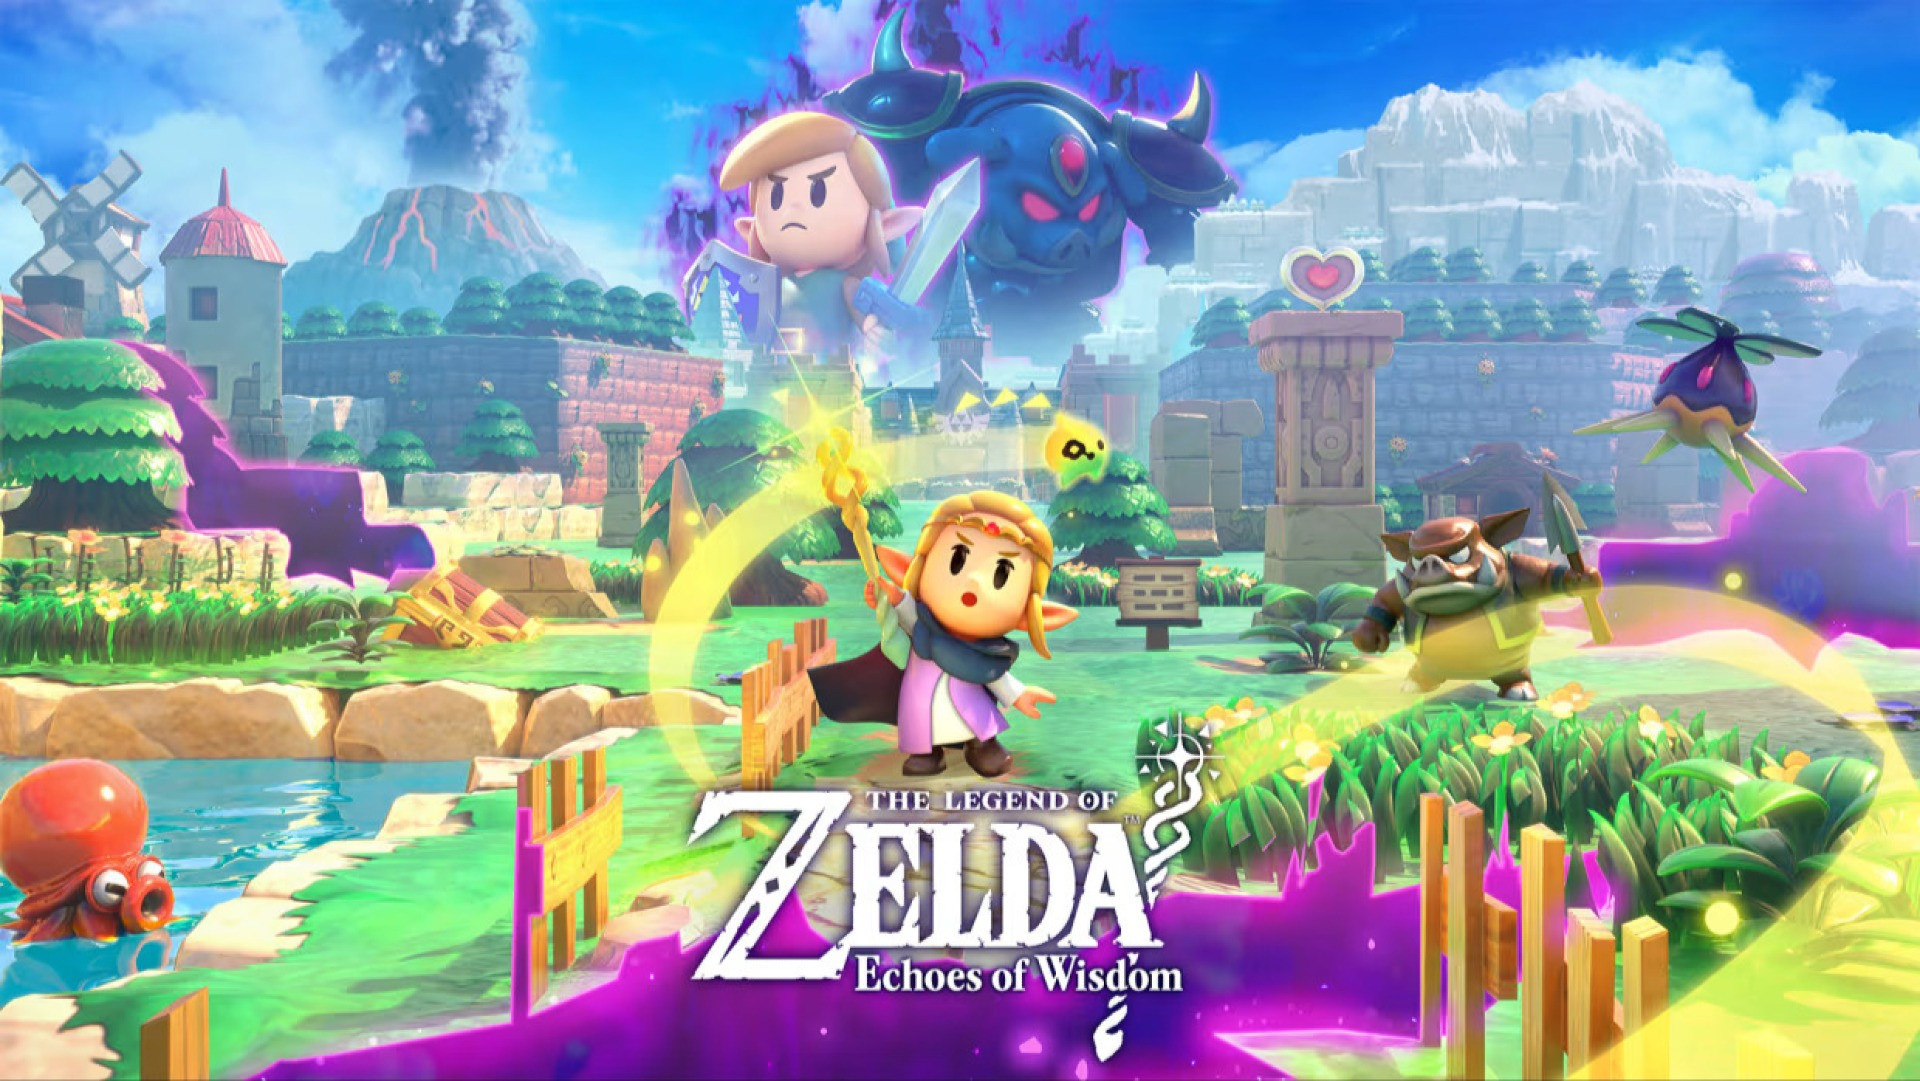 The Legend of Zelda Echoes of Wisdom